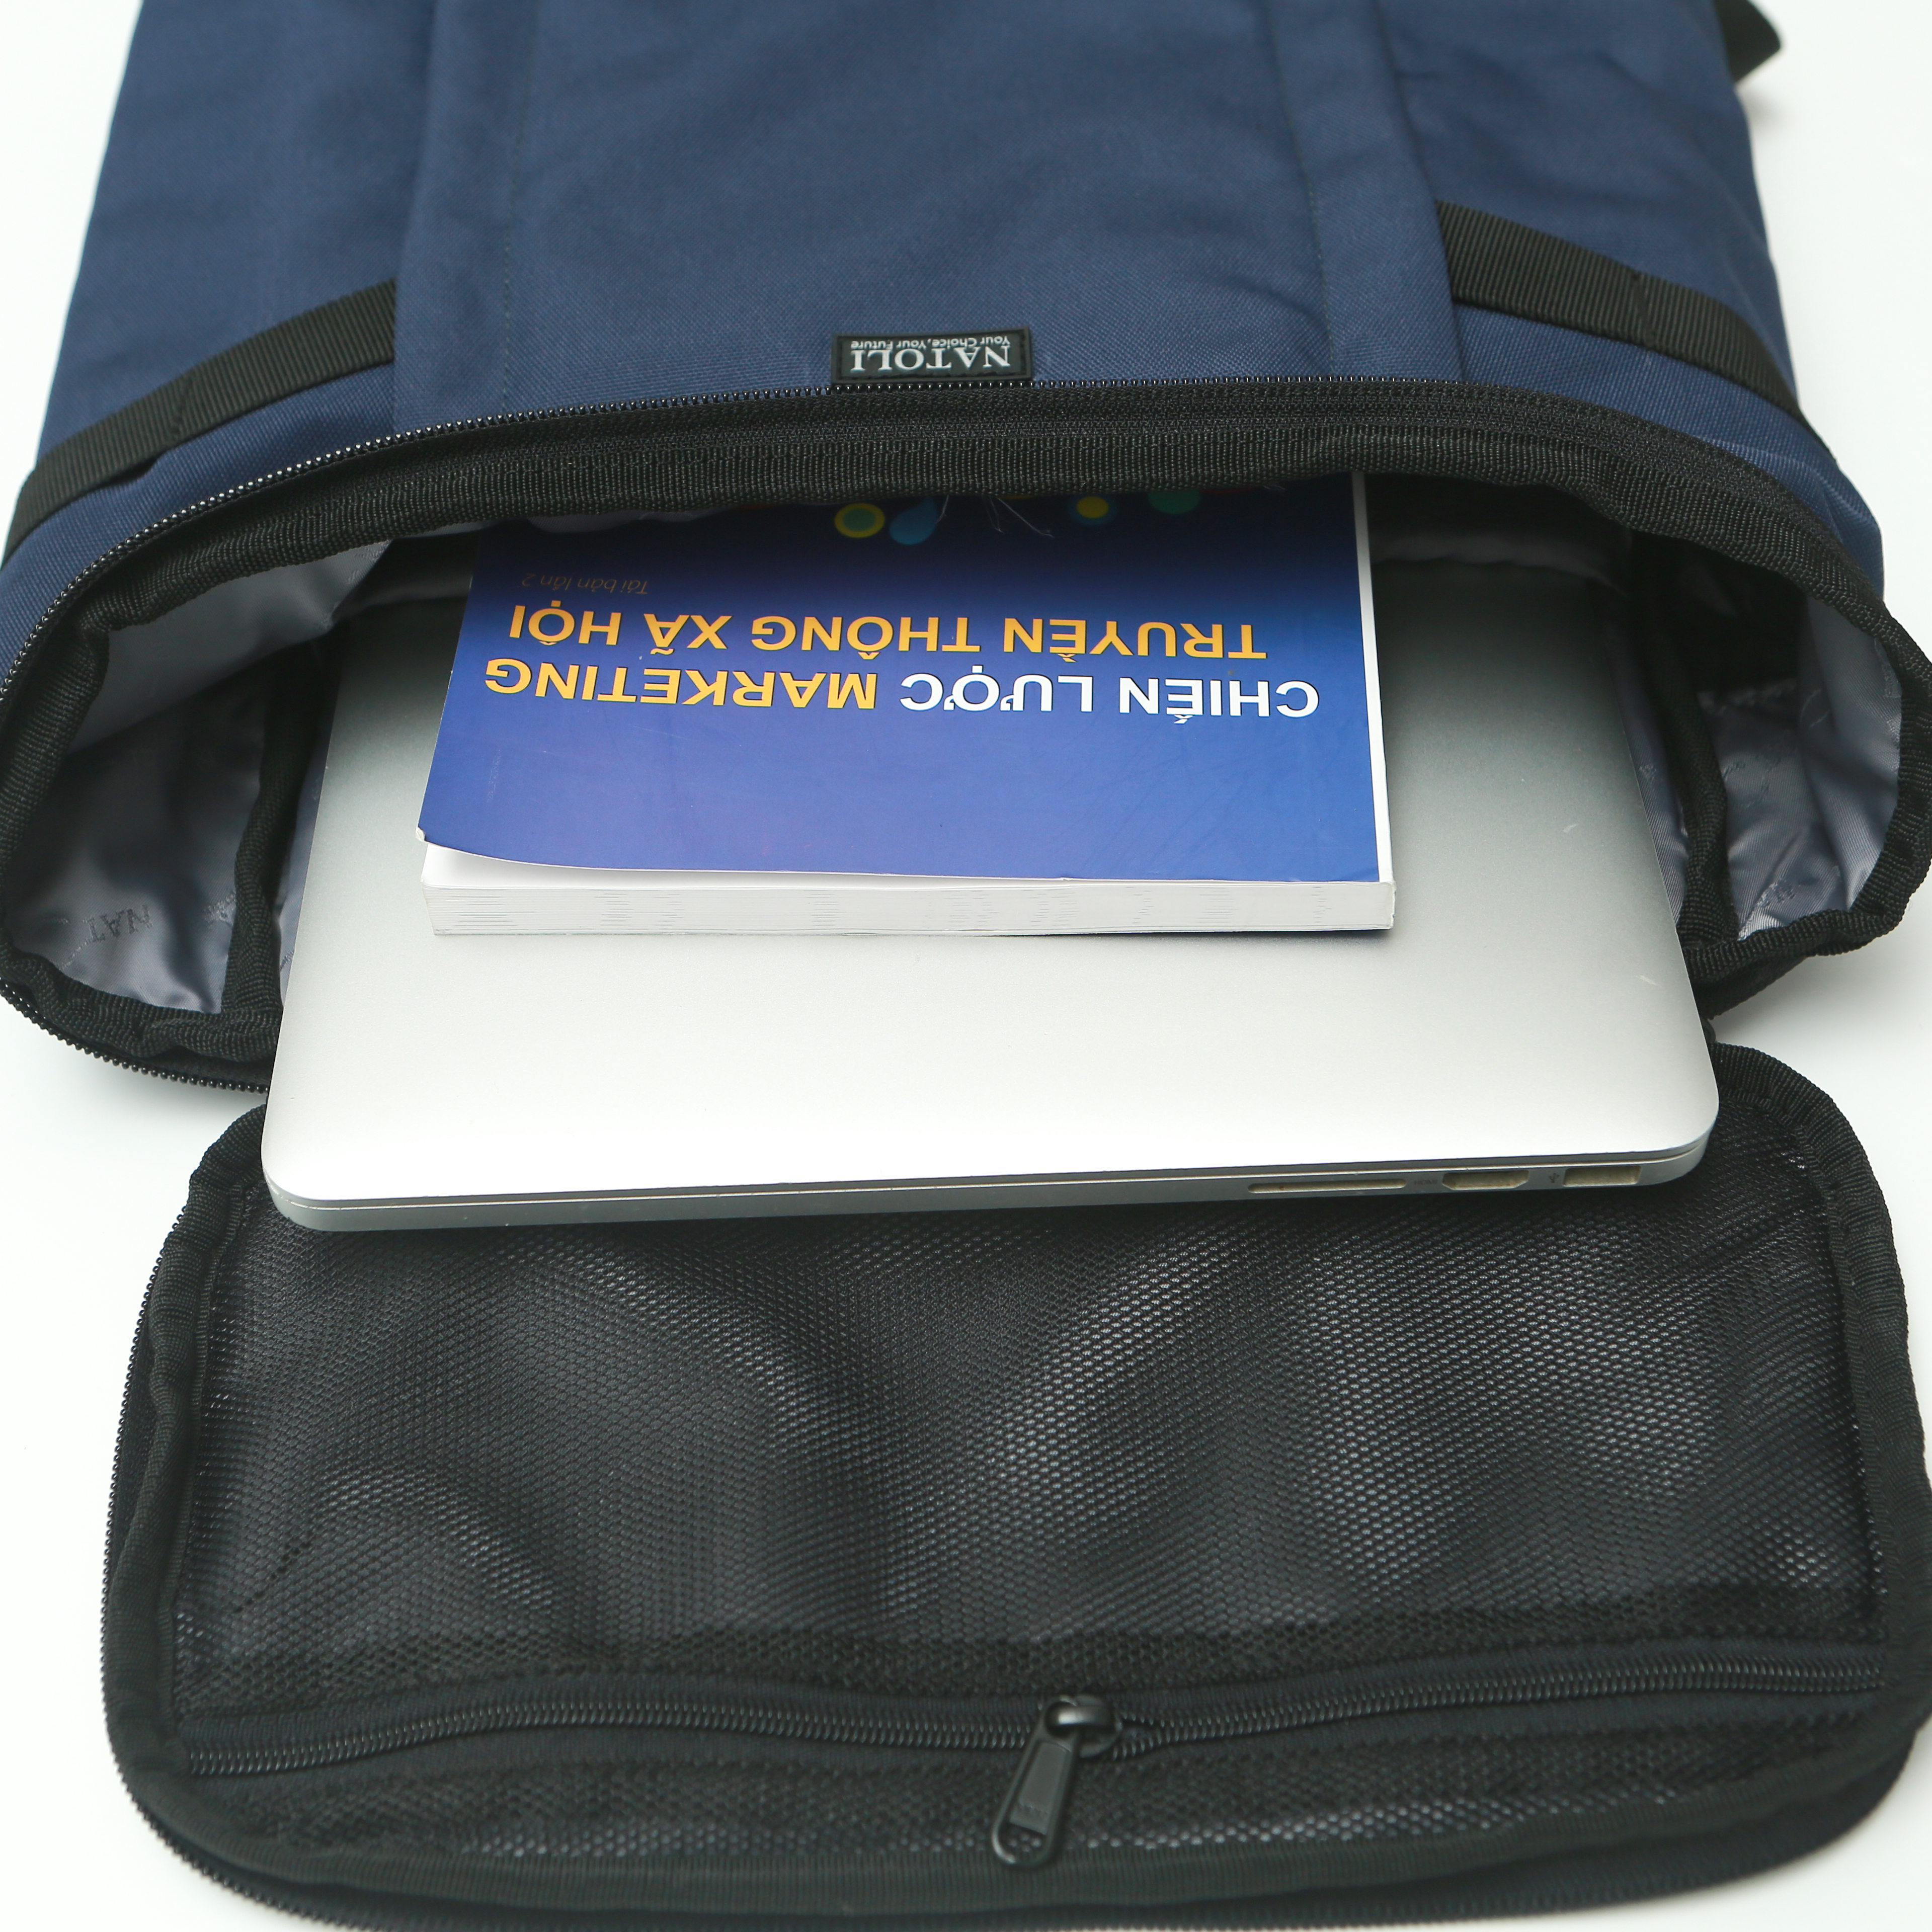 Balo du lịch chính hãng NATOLI BST Discovery Backpack thời trang kháng nước cao cấp